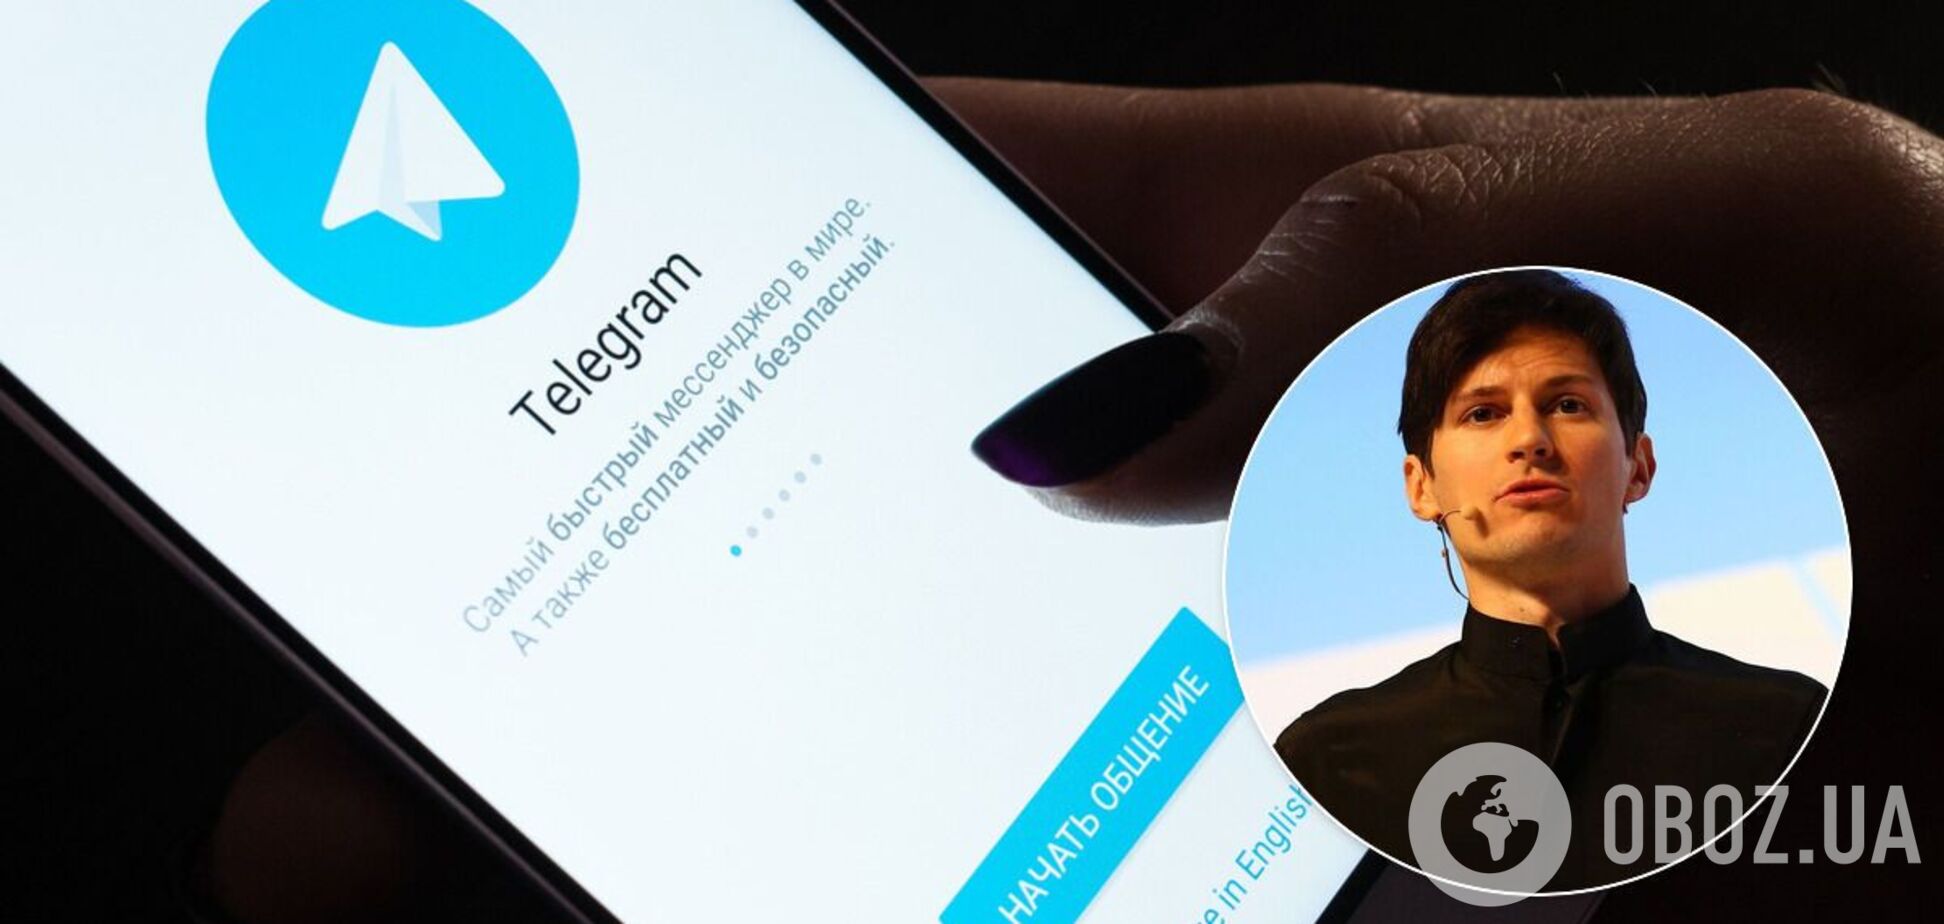 Дуров анонсировал начало монетизации Telegram: какие услуги останутся бесплатными